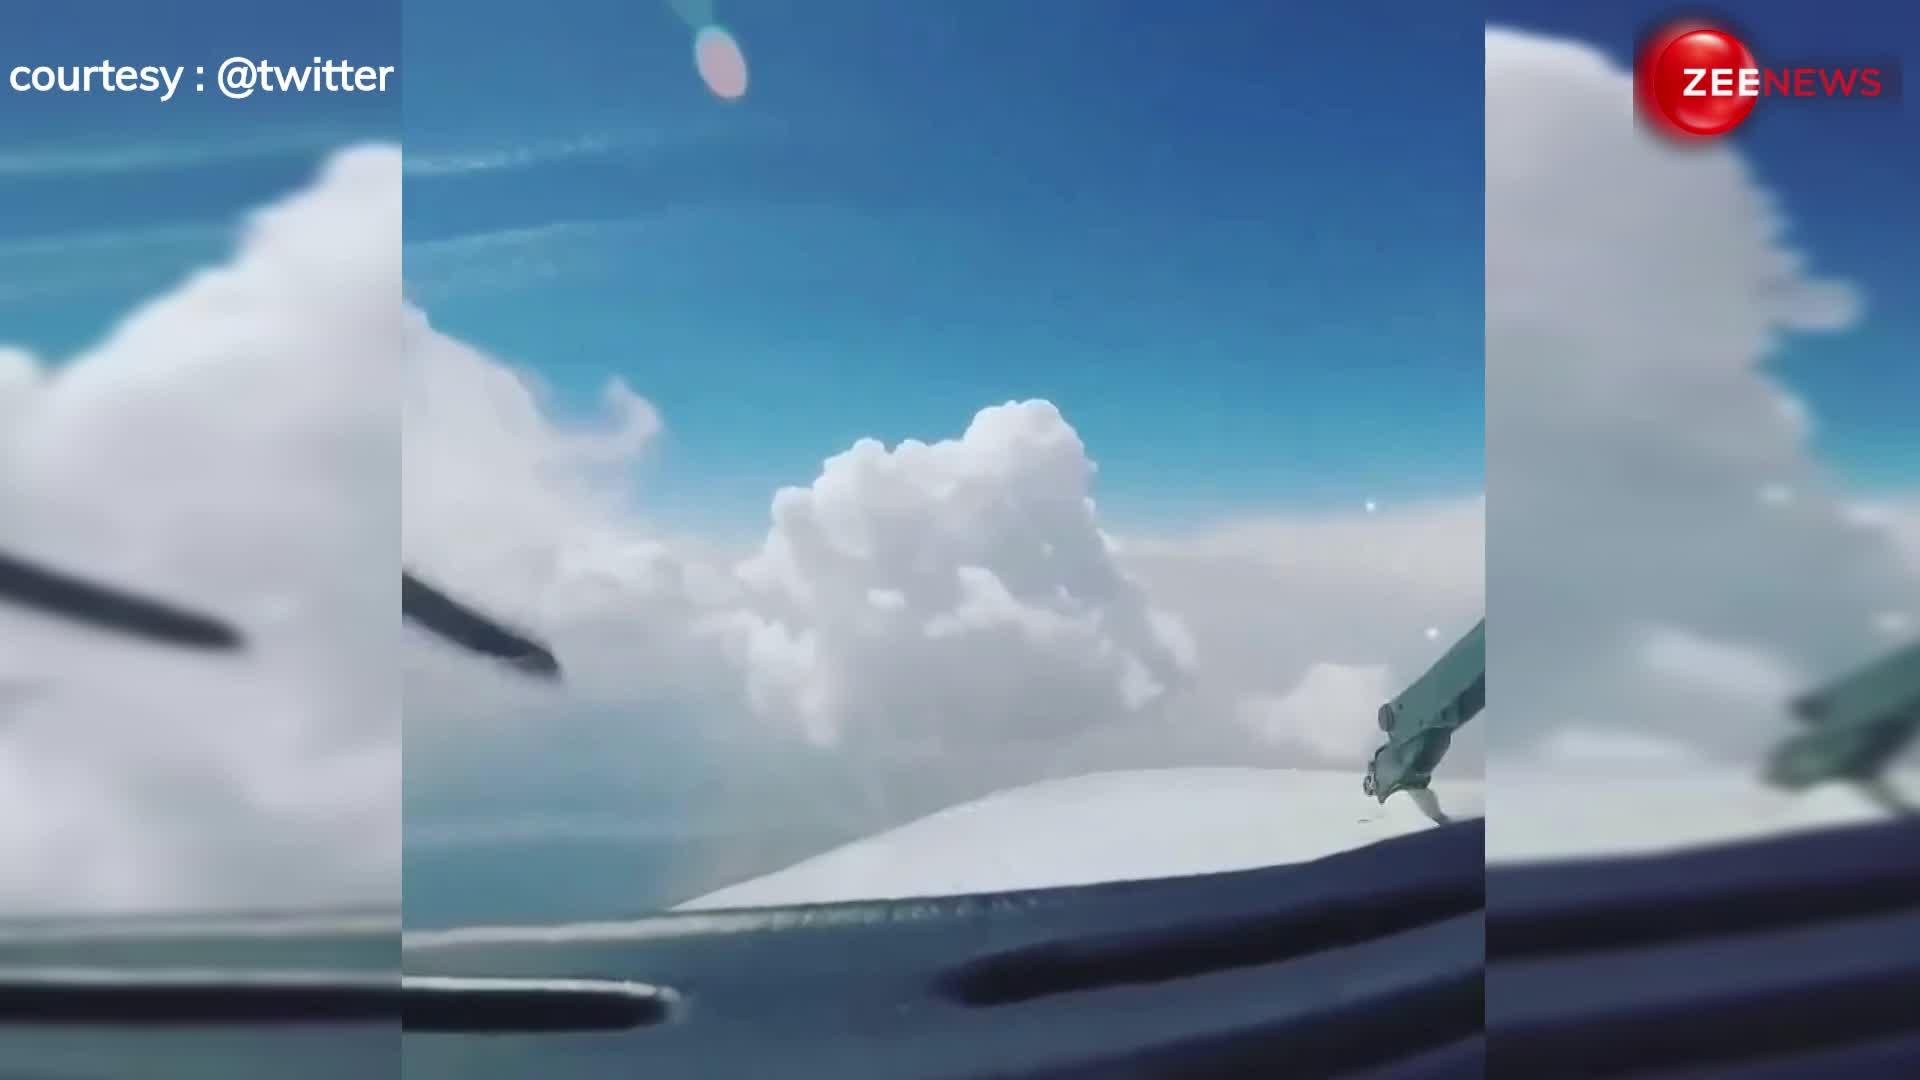 जब बादलों के बीच से घुसता है प्लेन तो पायलट को कैसा दिखता है नजारा, हैरान कर देगा ये वीडियो